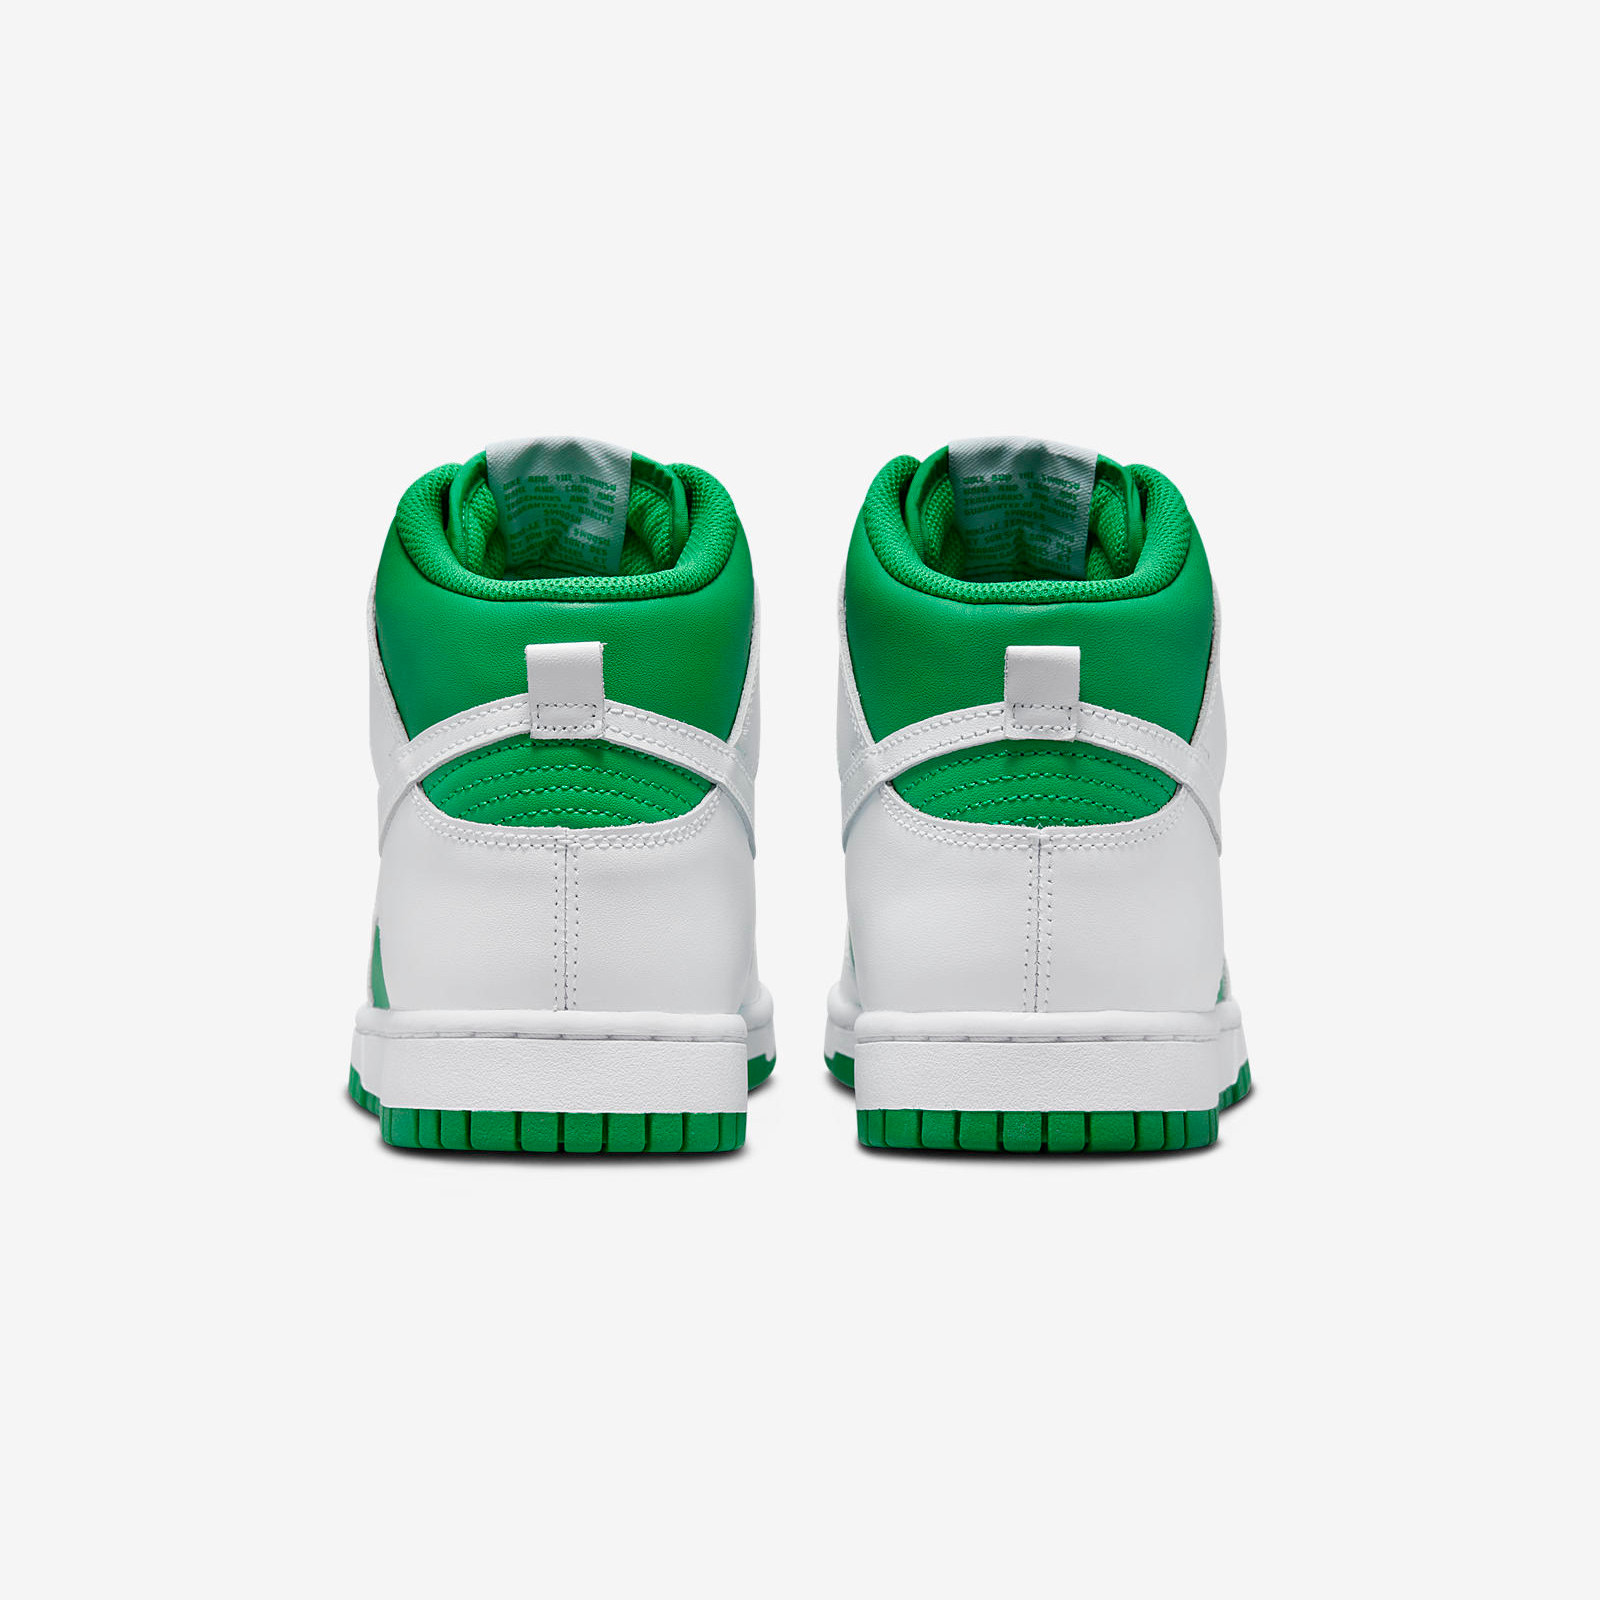 Nike Dunk High
Green / White